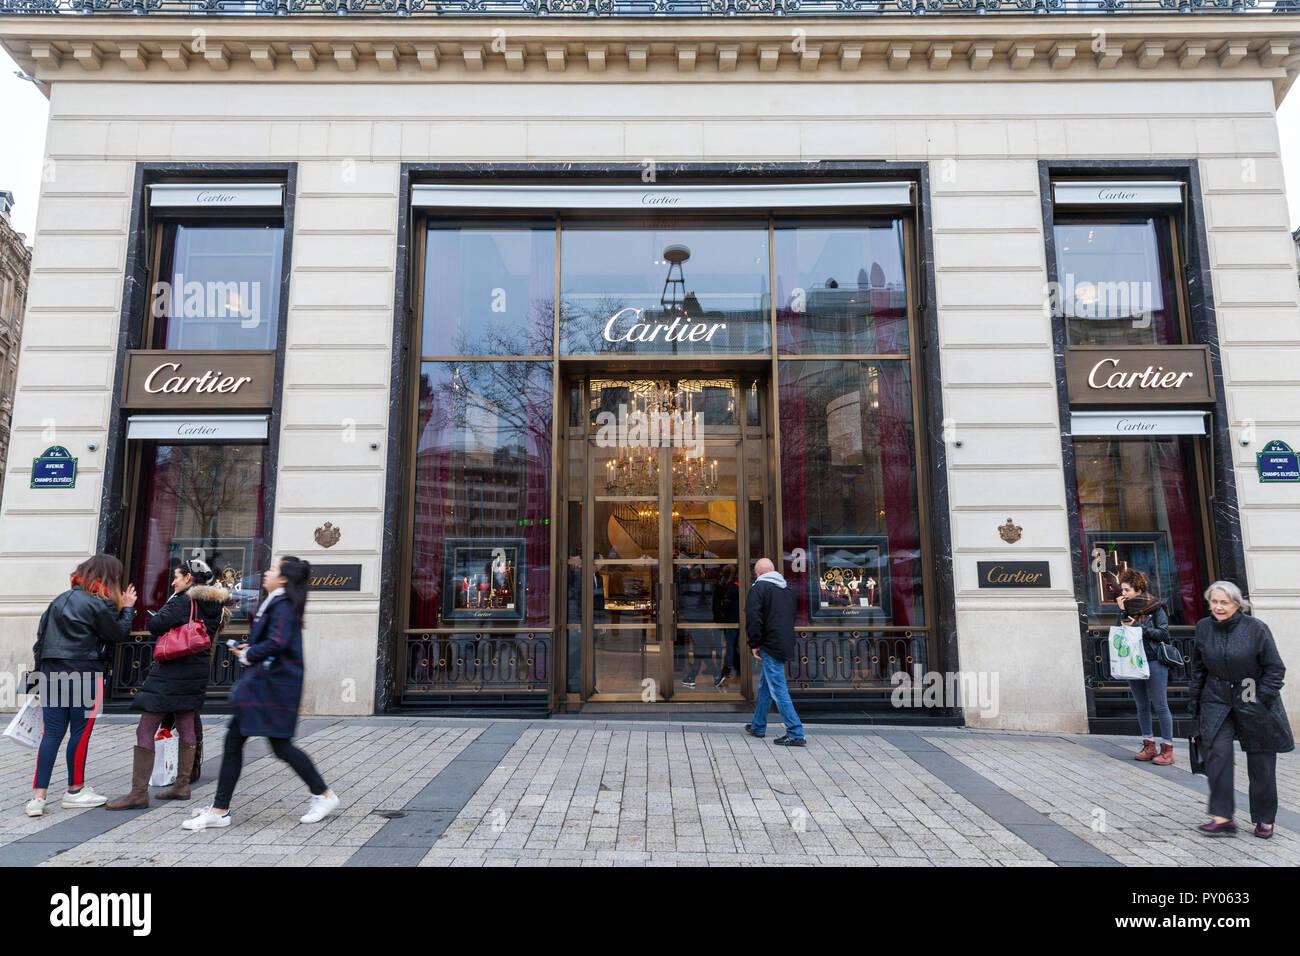 Parigi, Francia - 20 dicembre 2017: Cartier logo sul loro negozio principale sui Champs Elysee avenue. Cartier è un francese di beni di lusso società conglomerata whic Foto Stock